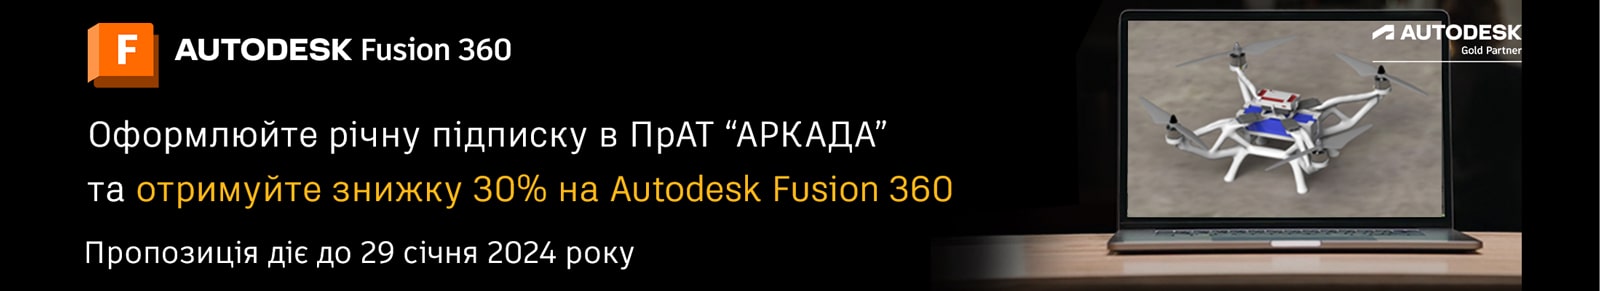 Купити Fusion 360 знижка 30%”